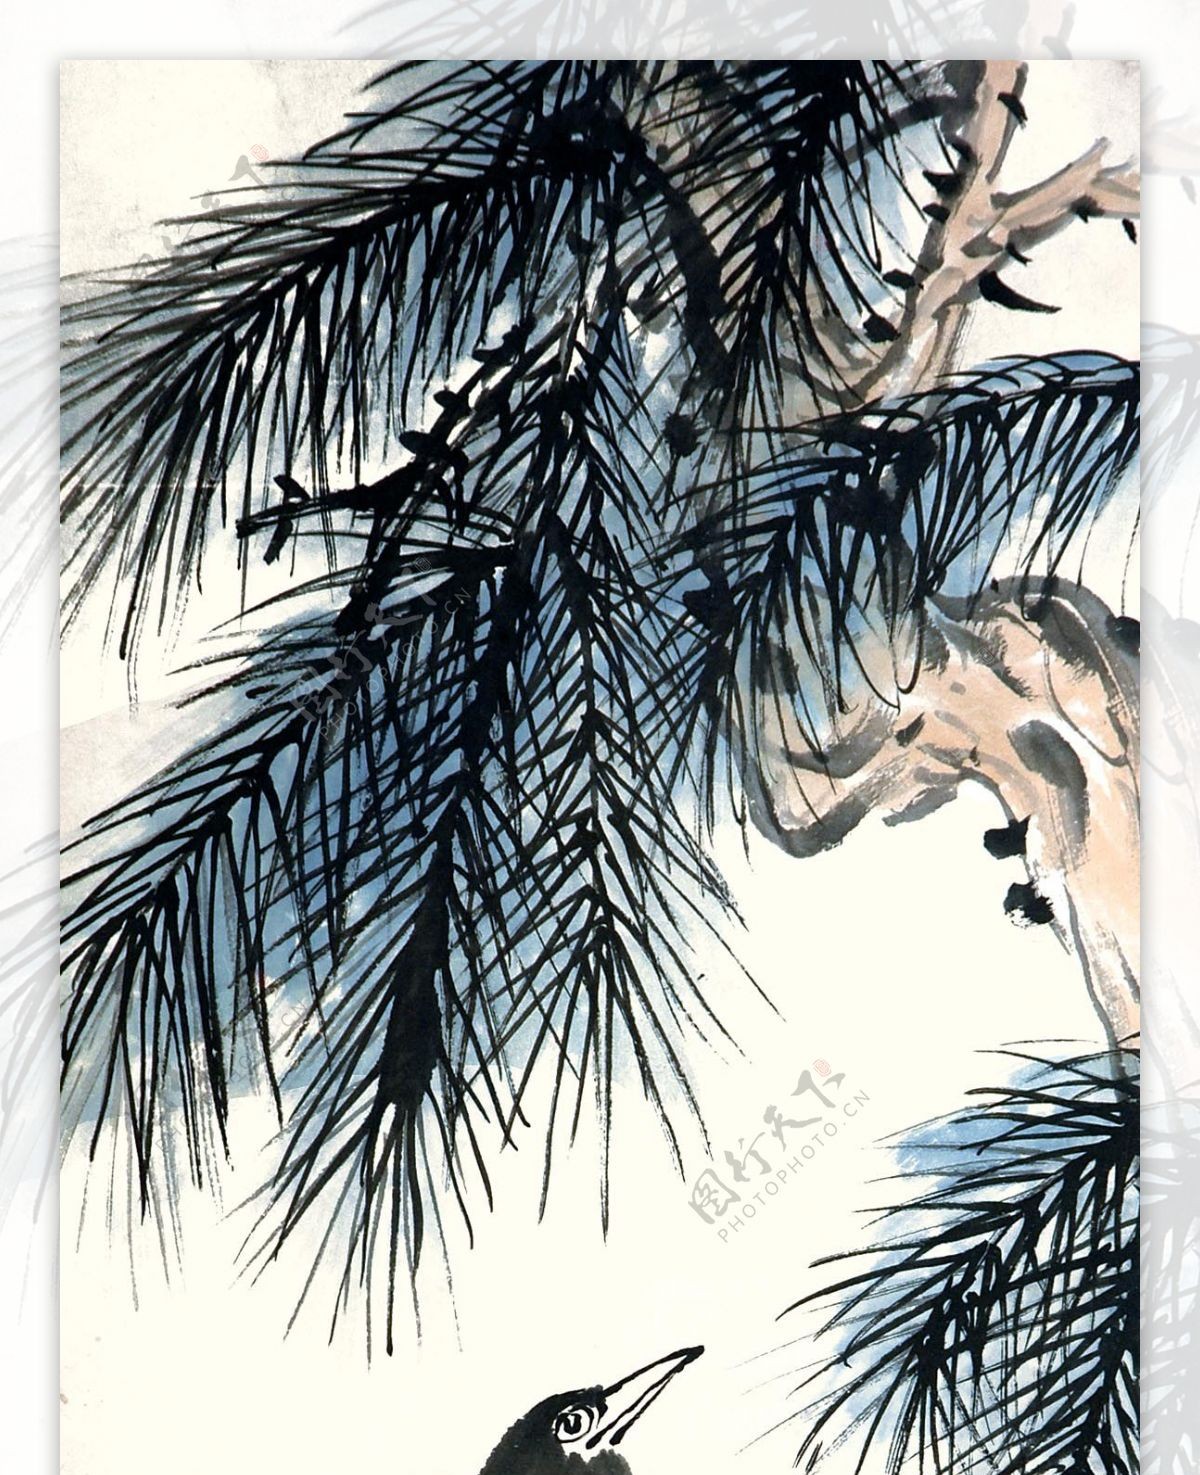 竹子小鸟水墨画图片